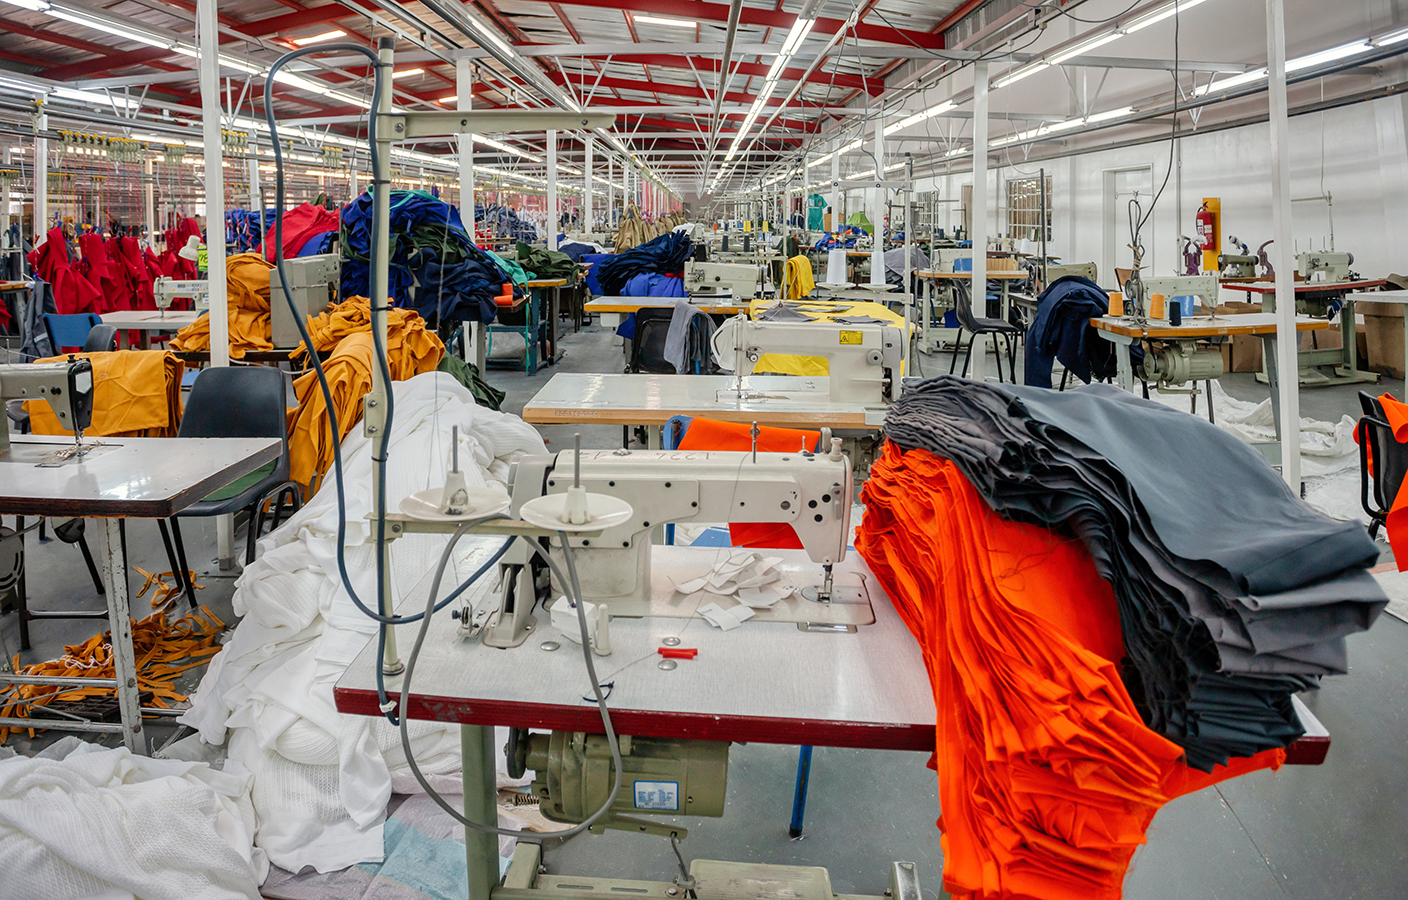 L'escalada dels preus de la llum posa en màxima tensió la indústria tèxtil El Periòdic d'Ontinyent - Noticies a Ontinyent